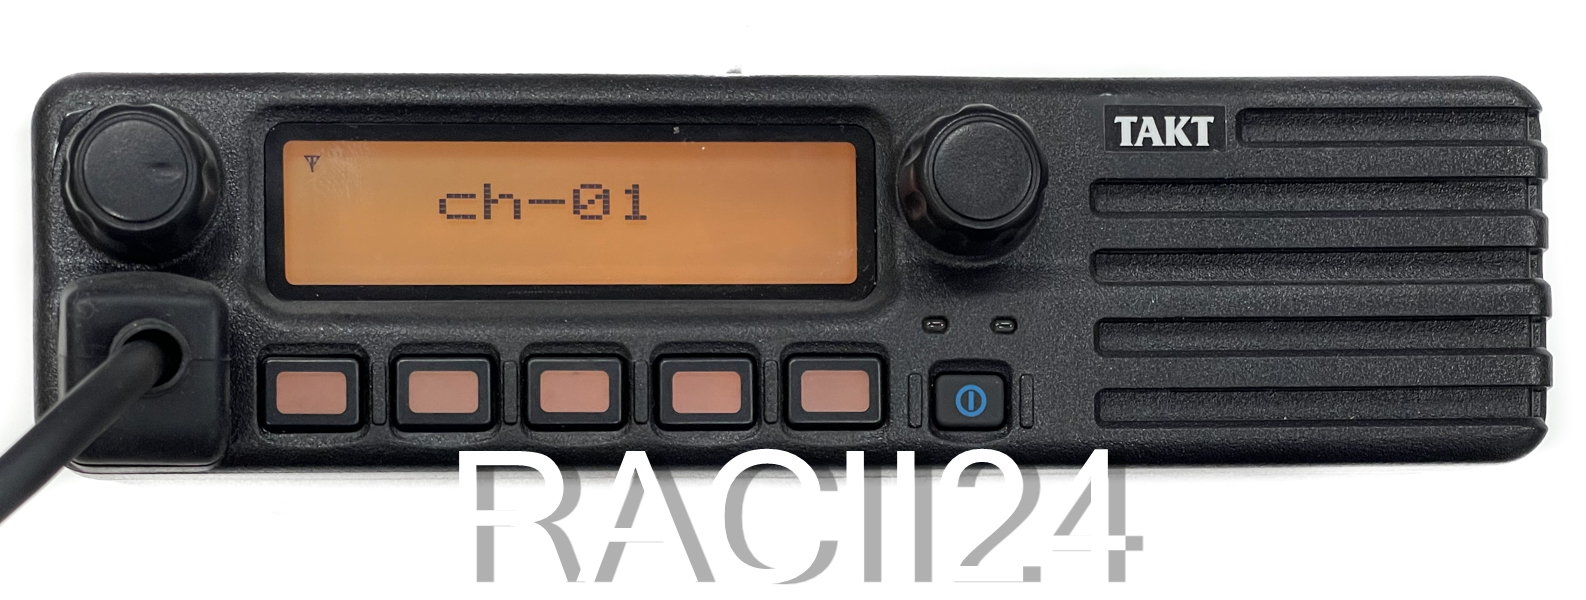 Речная радиостанция Такт-202.21 П45 UHF в магазине RACII24.RU, фото